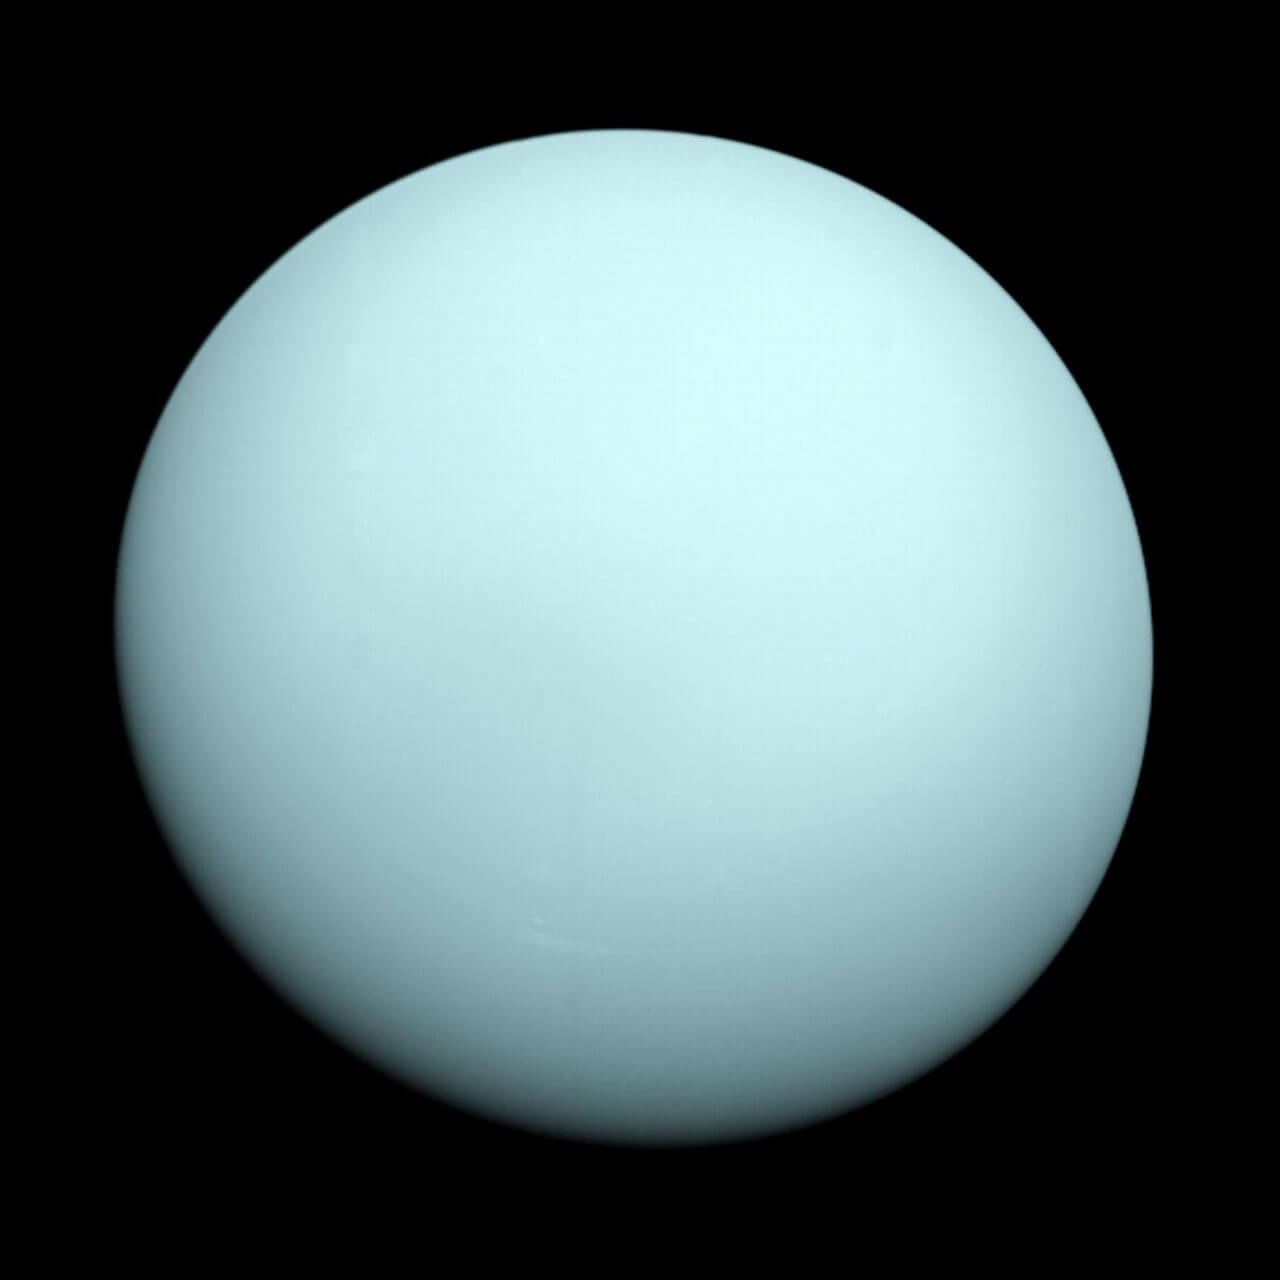 ボイジャー2号が撮影した天王星 | sorae 宇宙へのポータルサイト